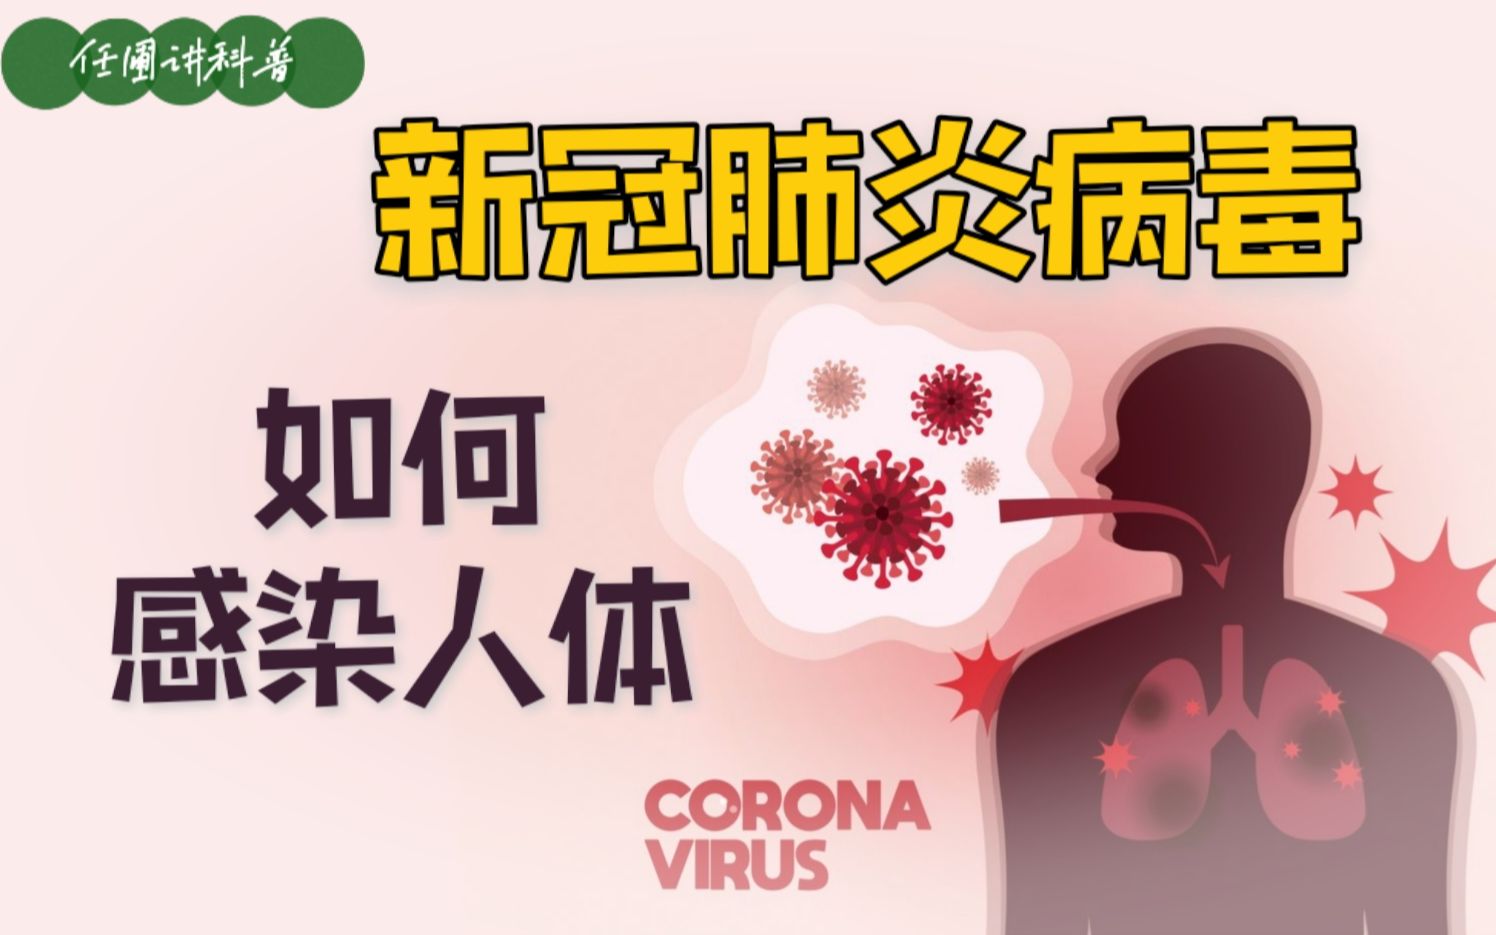 【任圃讲科普】新冠肺炎病毒是如何感染与繁衍的?